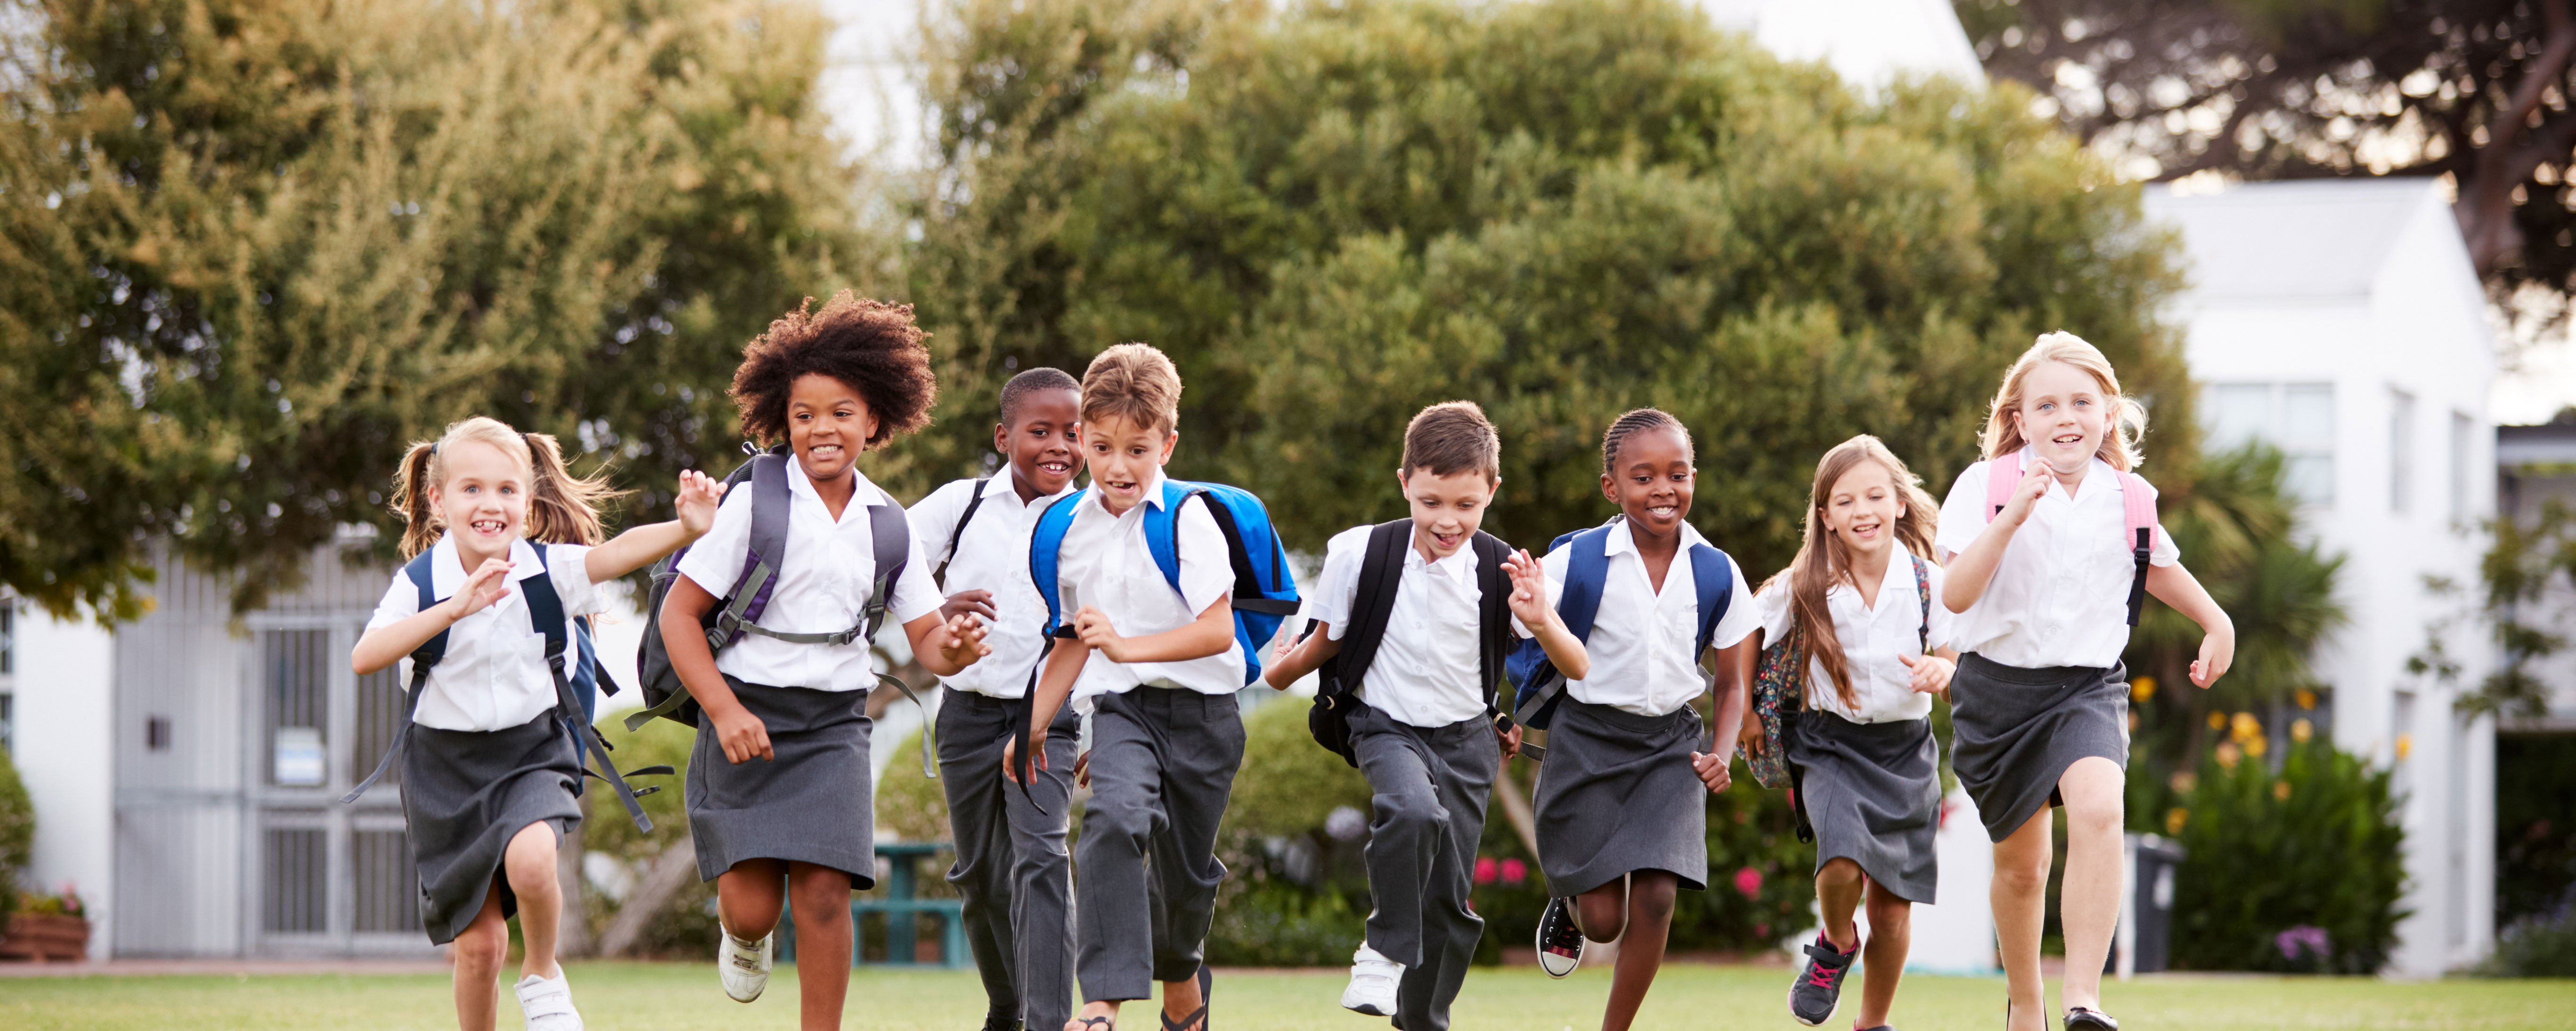 School children running in a park wearing uniforms